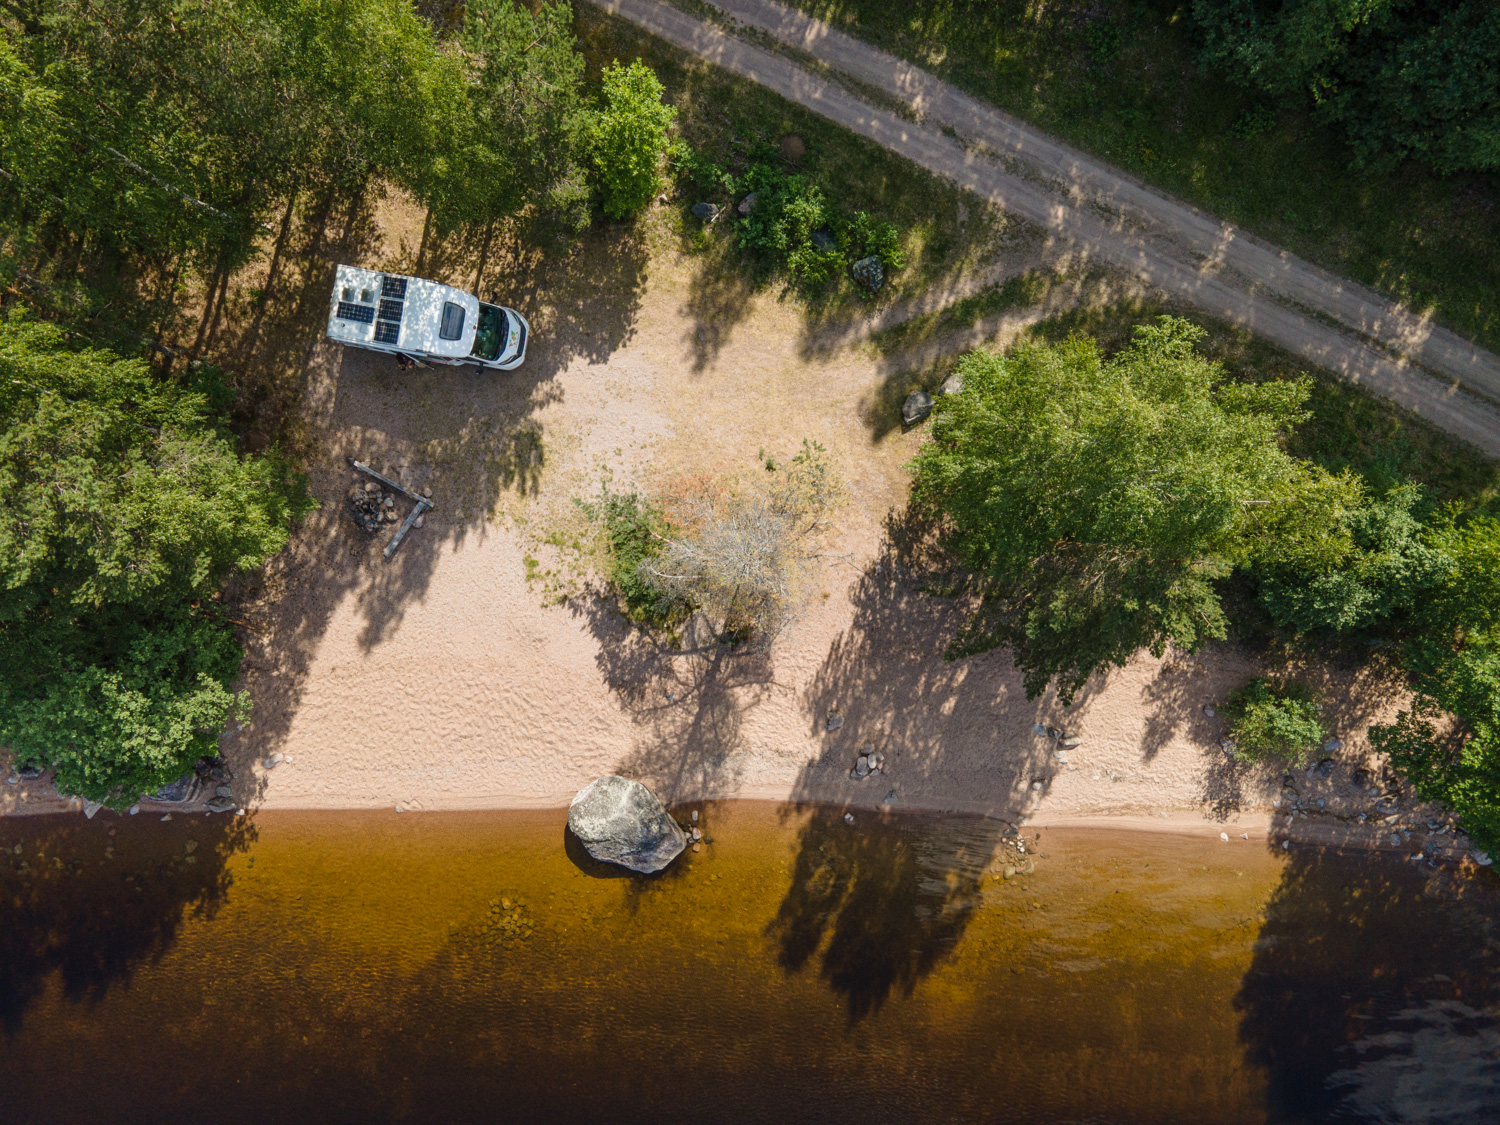 En bild tagen av en drönare. Bilden föreställer en husbil på en sjöstrand vid en skog. Bredvid syns en liten skogsväg.